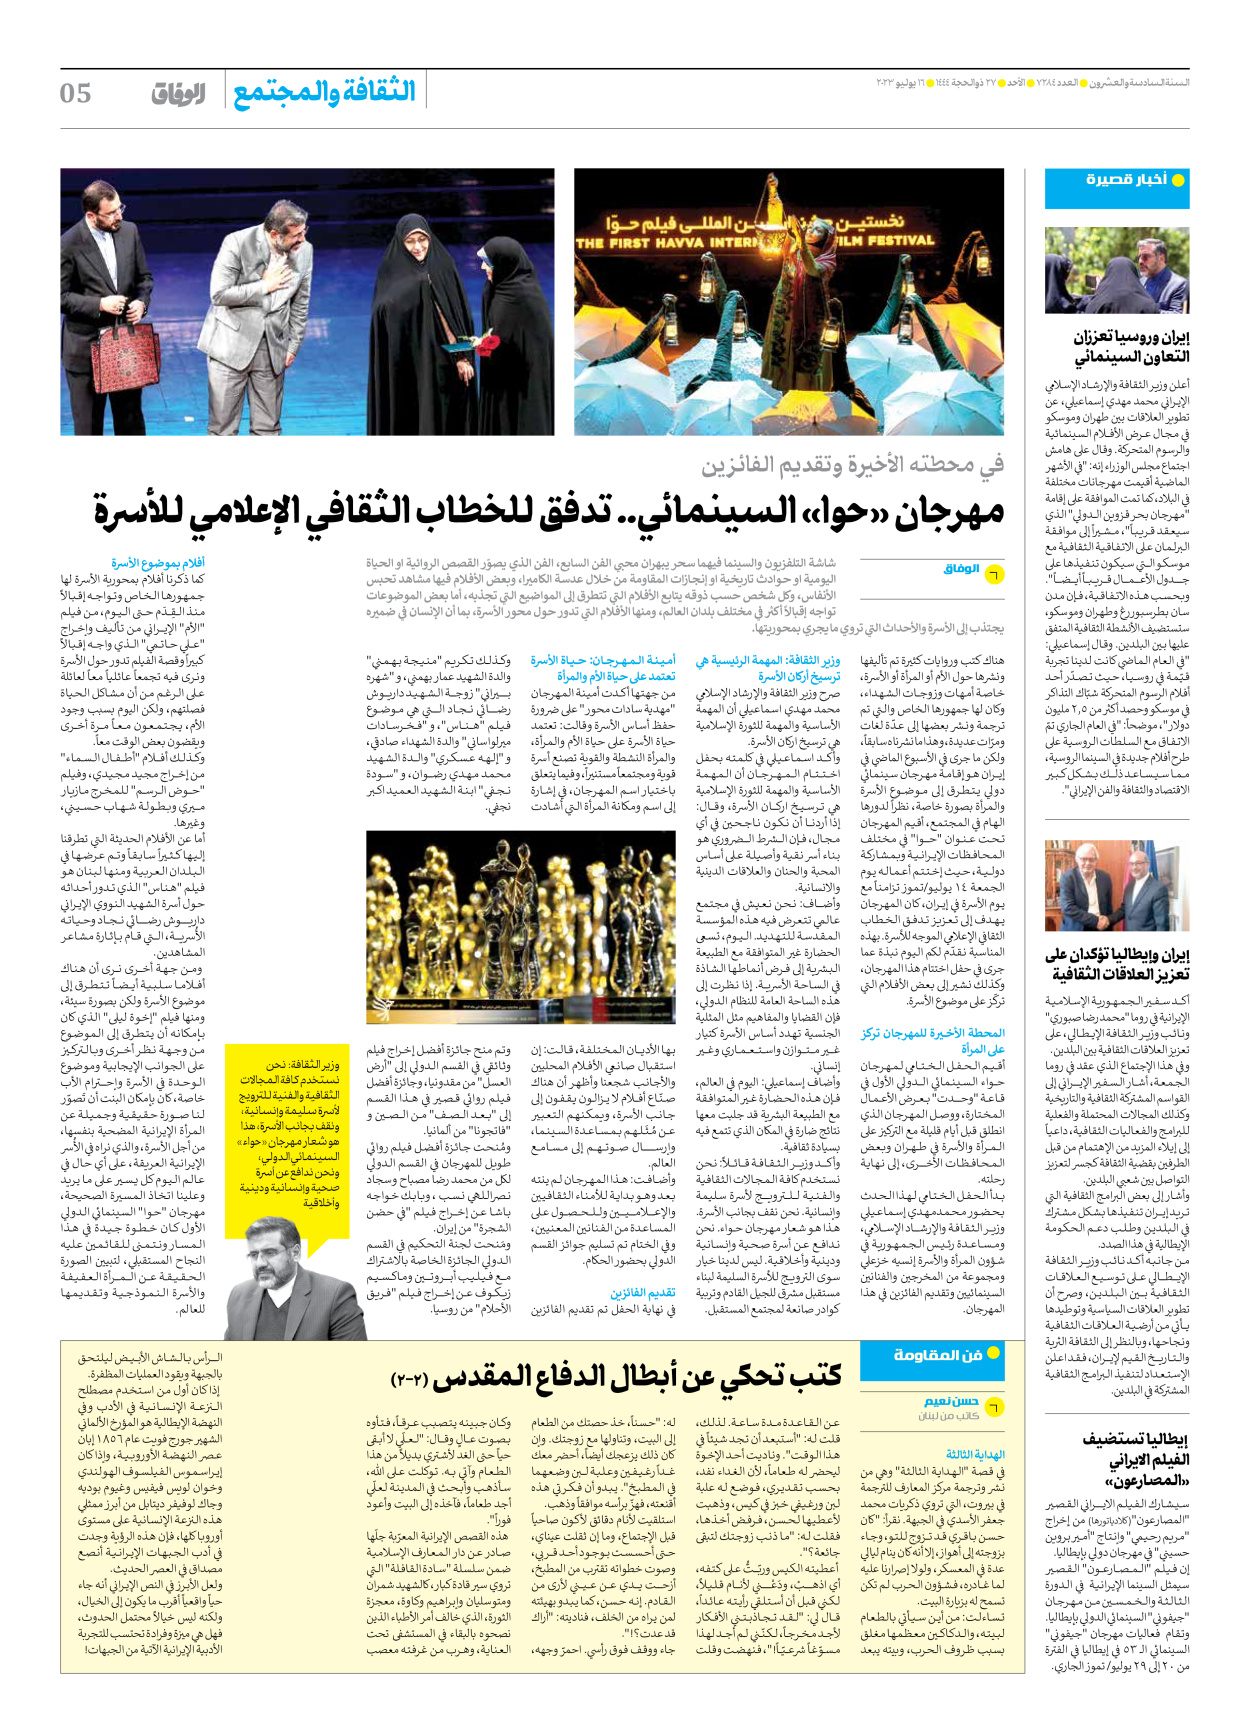 صحیفة ایران الدولیة الوفاق - العدد سبعة آلاف ومائتان وأربعة وثمانون - ١٦ يوليو ٢٠٢٣ - الصفحة ٥